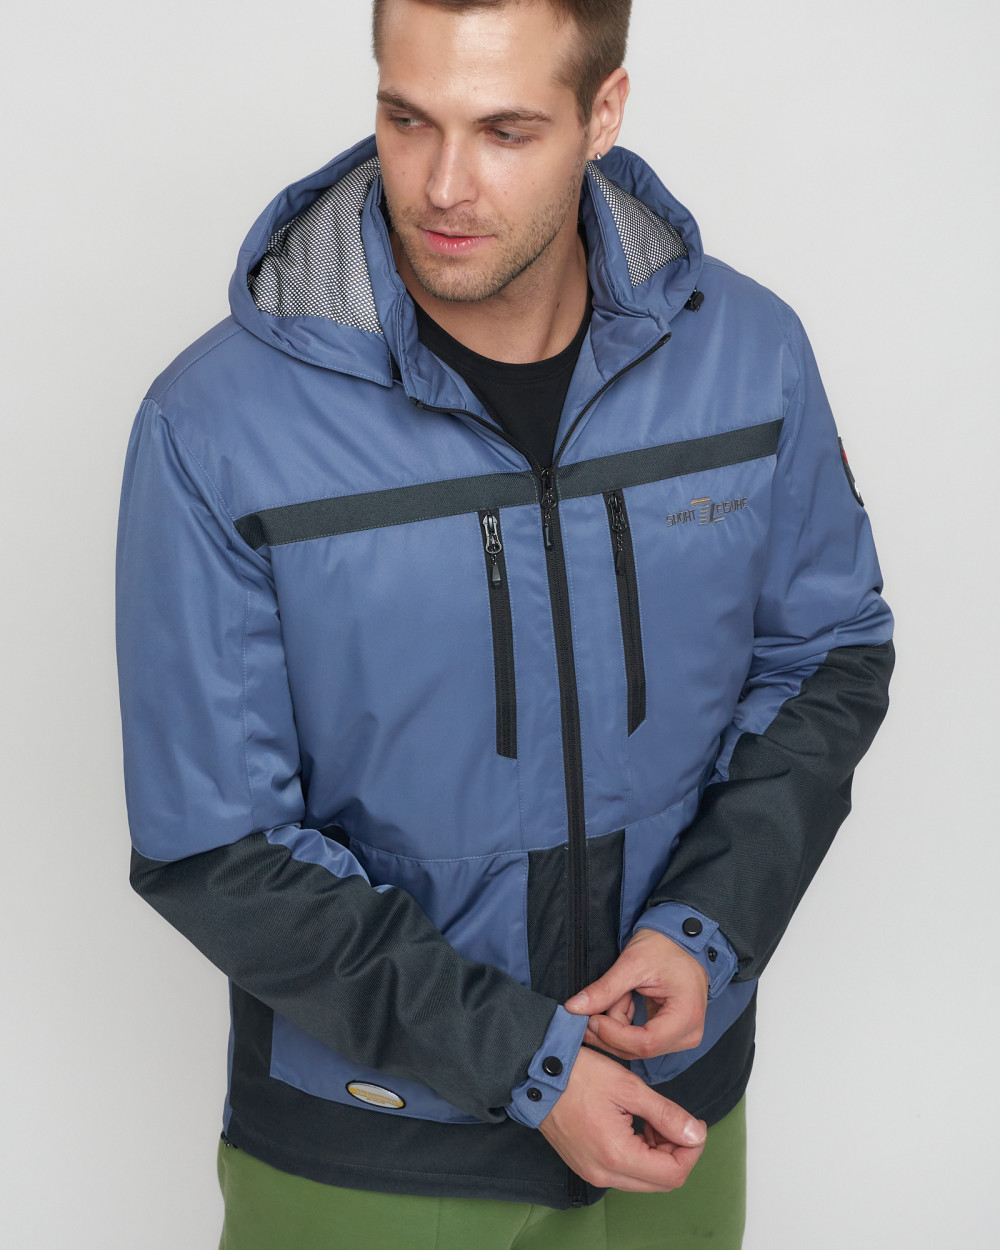 Купить куртку мужскую спортивную весеннюю оптом от производителя недорого в Москве 8815S 1